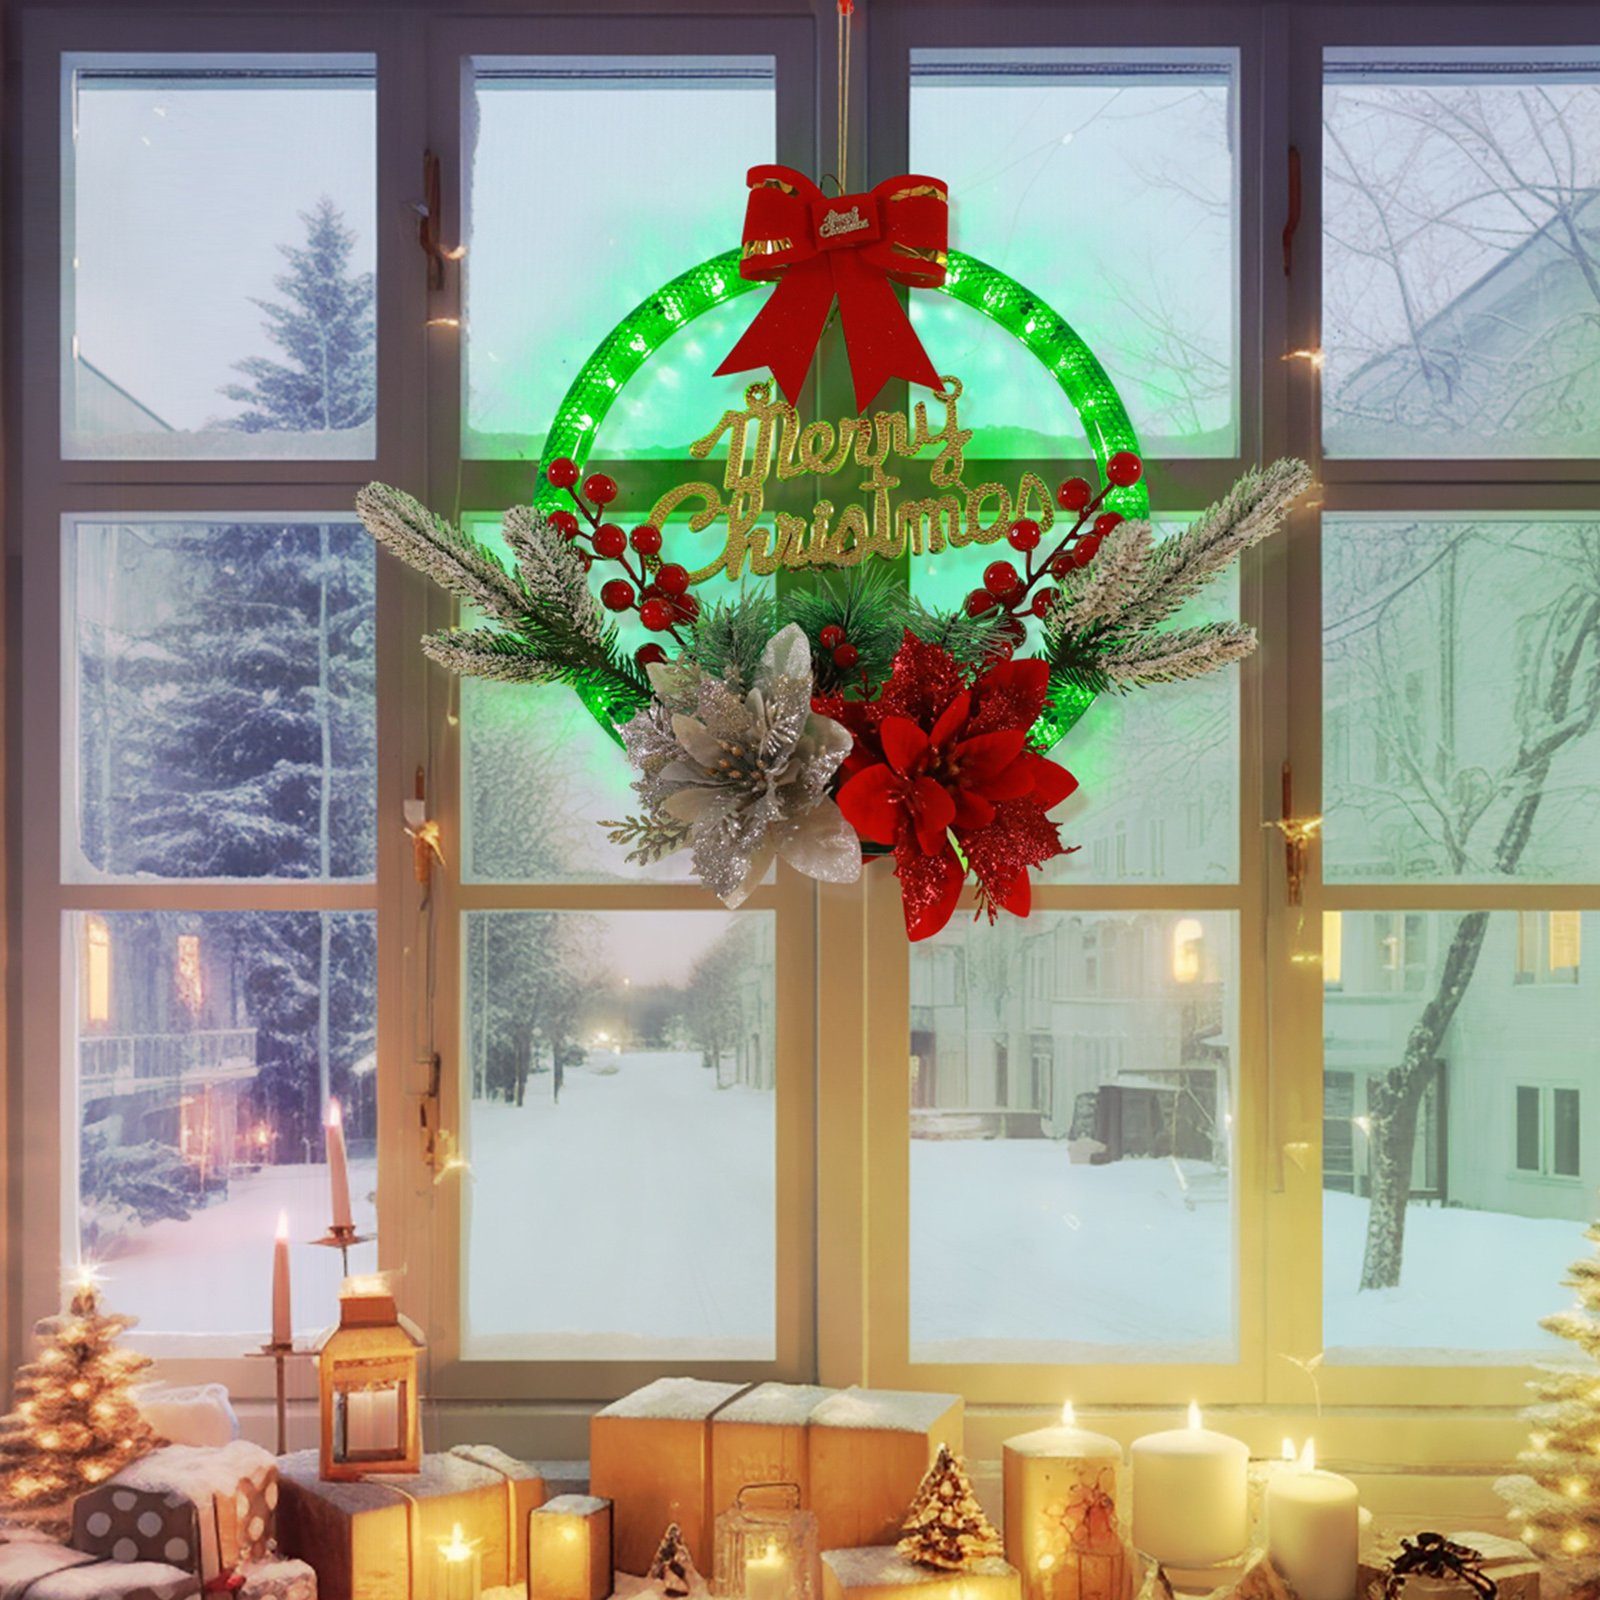 Schlafzimmer, Sunicol 28cm für Türkranz, Grün, Nachtlicht, Hochzeits mit Dekolicht Gold-Rot Weihnachten, Deko-Lichter LED Party, Batterien Weihnachtskranz LED